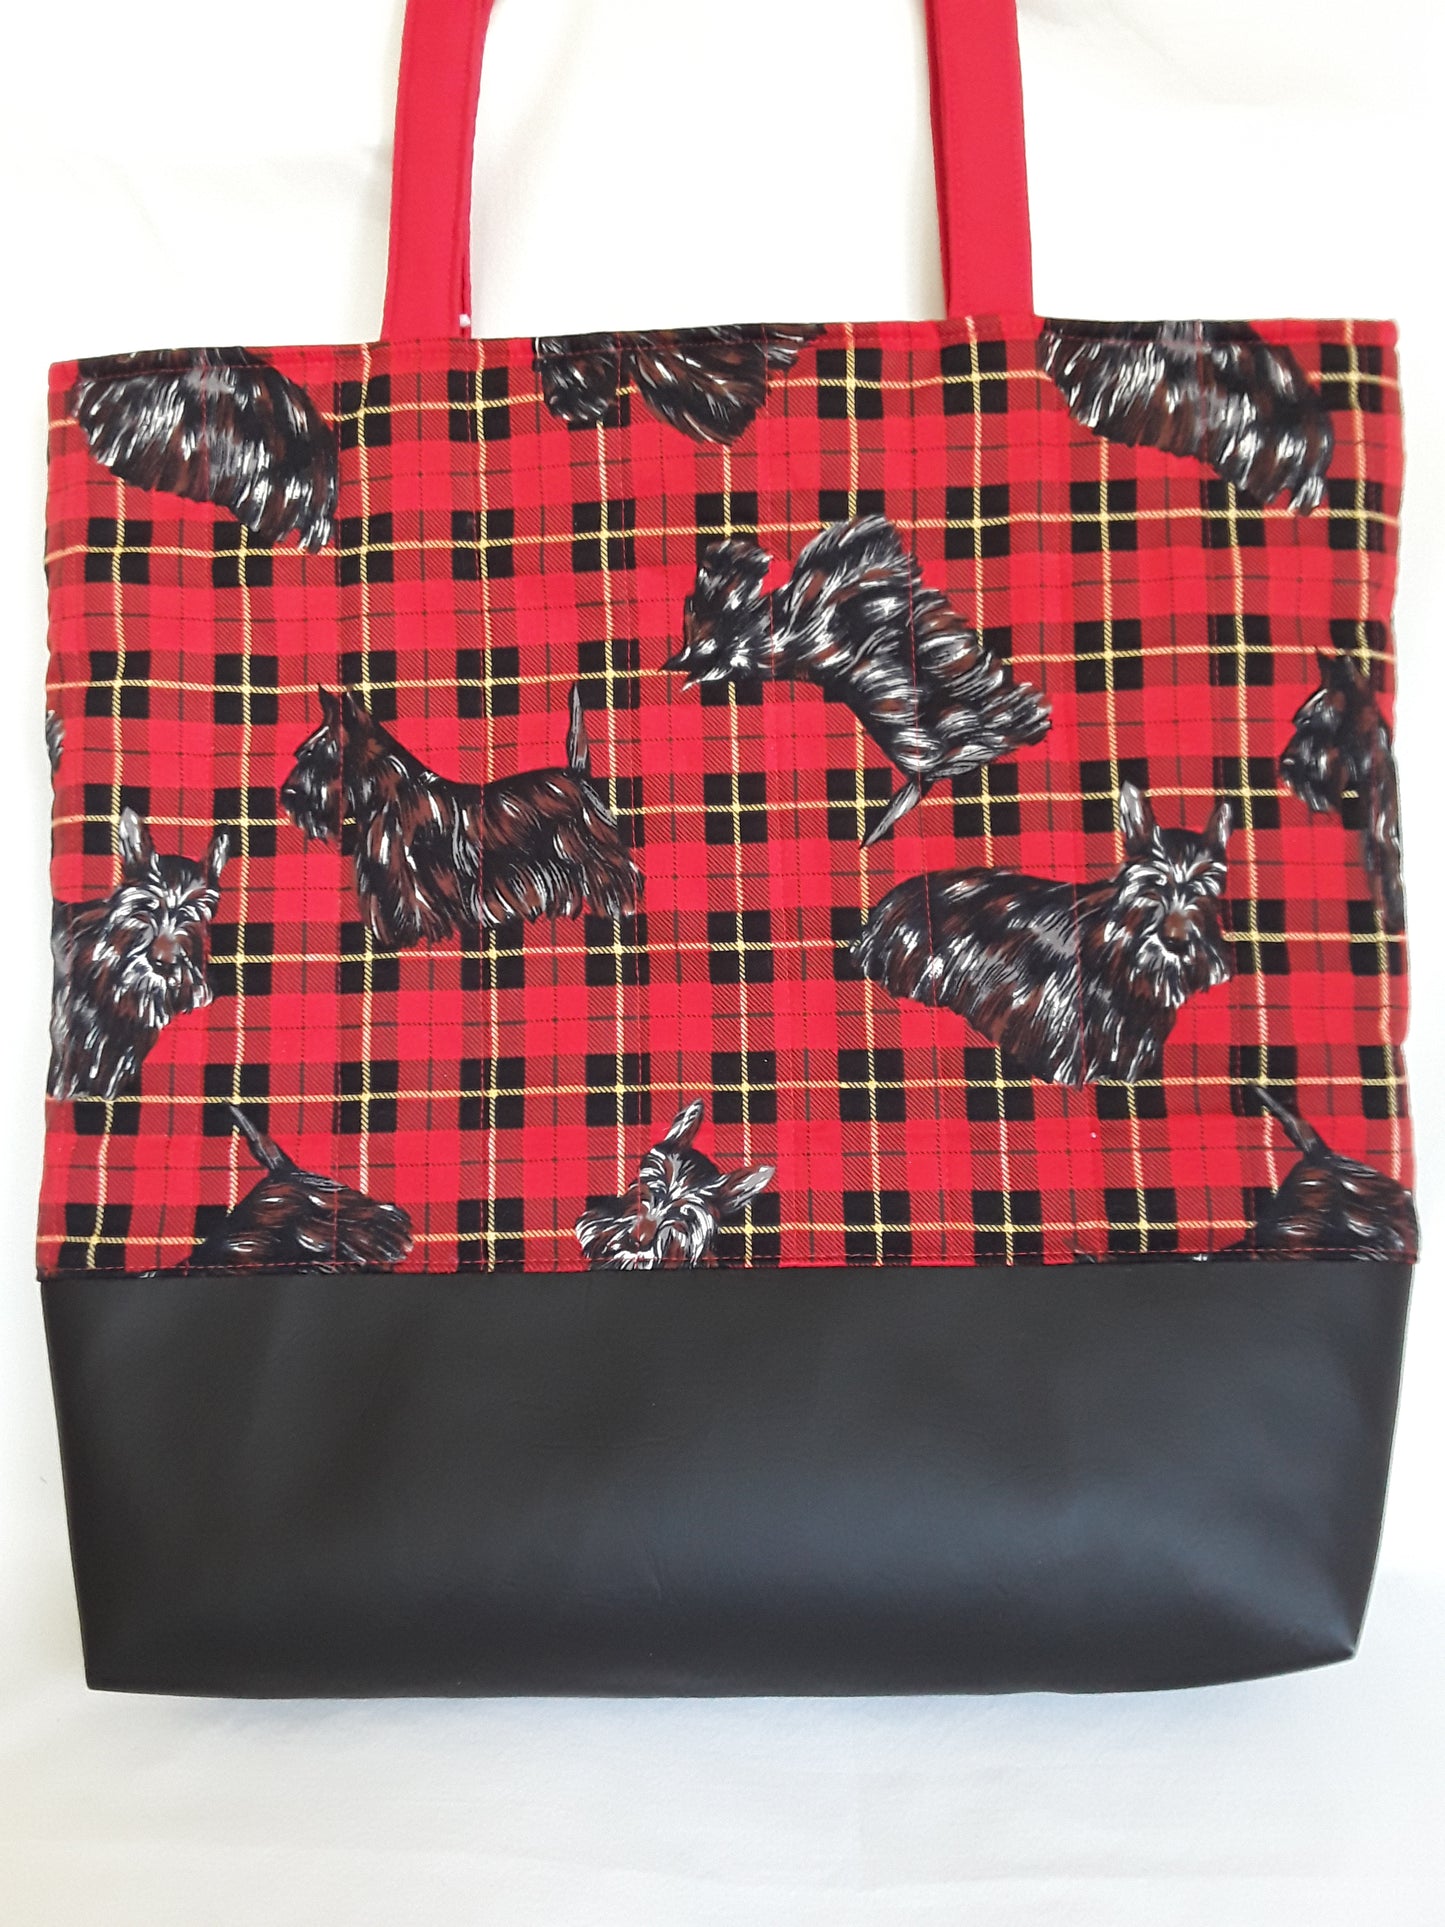 Tote bag, Scottie Dog Tote Bag, Tartan tote bag, Red Tote bag, Large carry bag, Large travel bag, Scottish Terrier bag